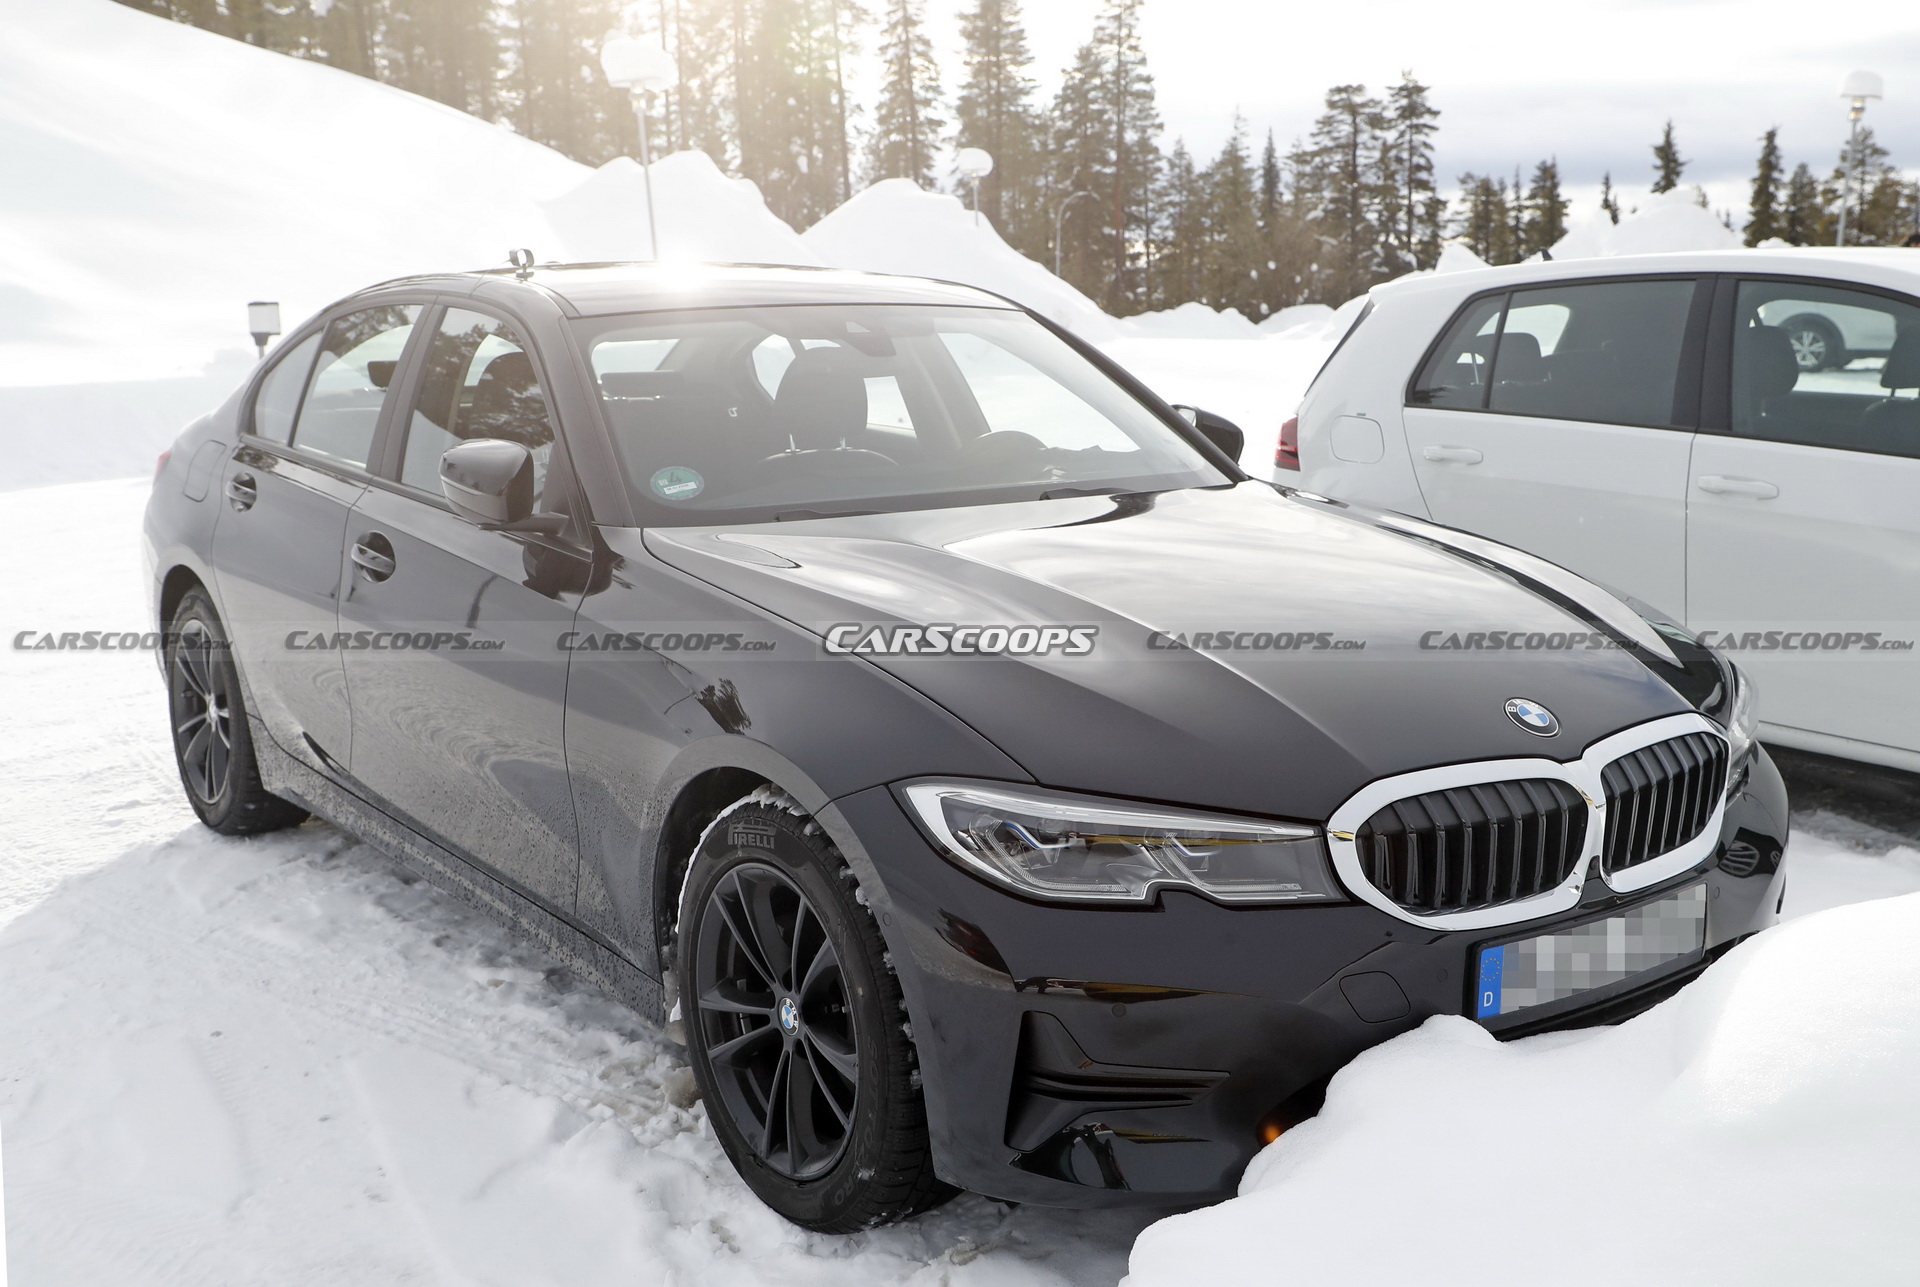 BMW 3-Series nâng cấp lộ nội thất mới với màn hình cong 2022-bmw-3-series-facelift-scoop-03.jpg